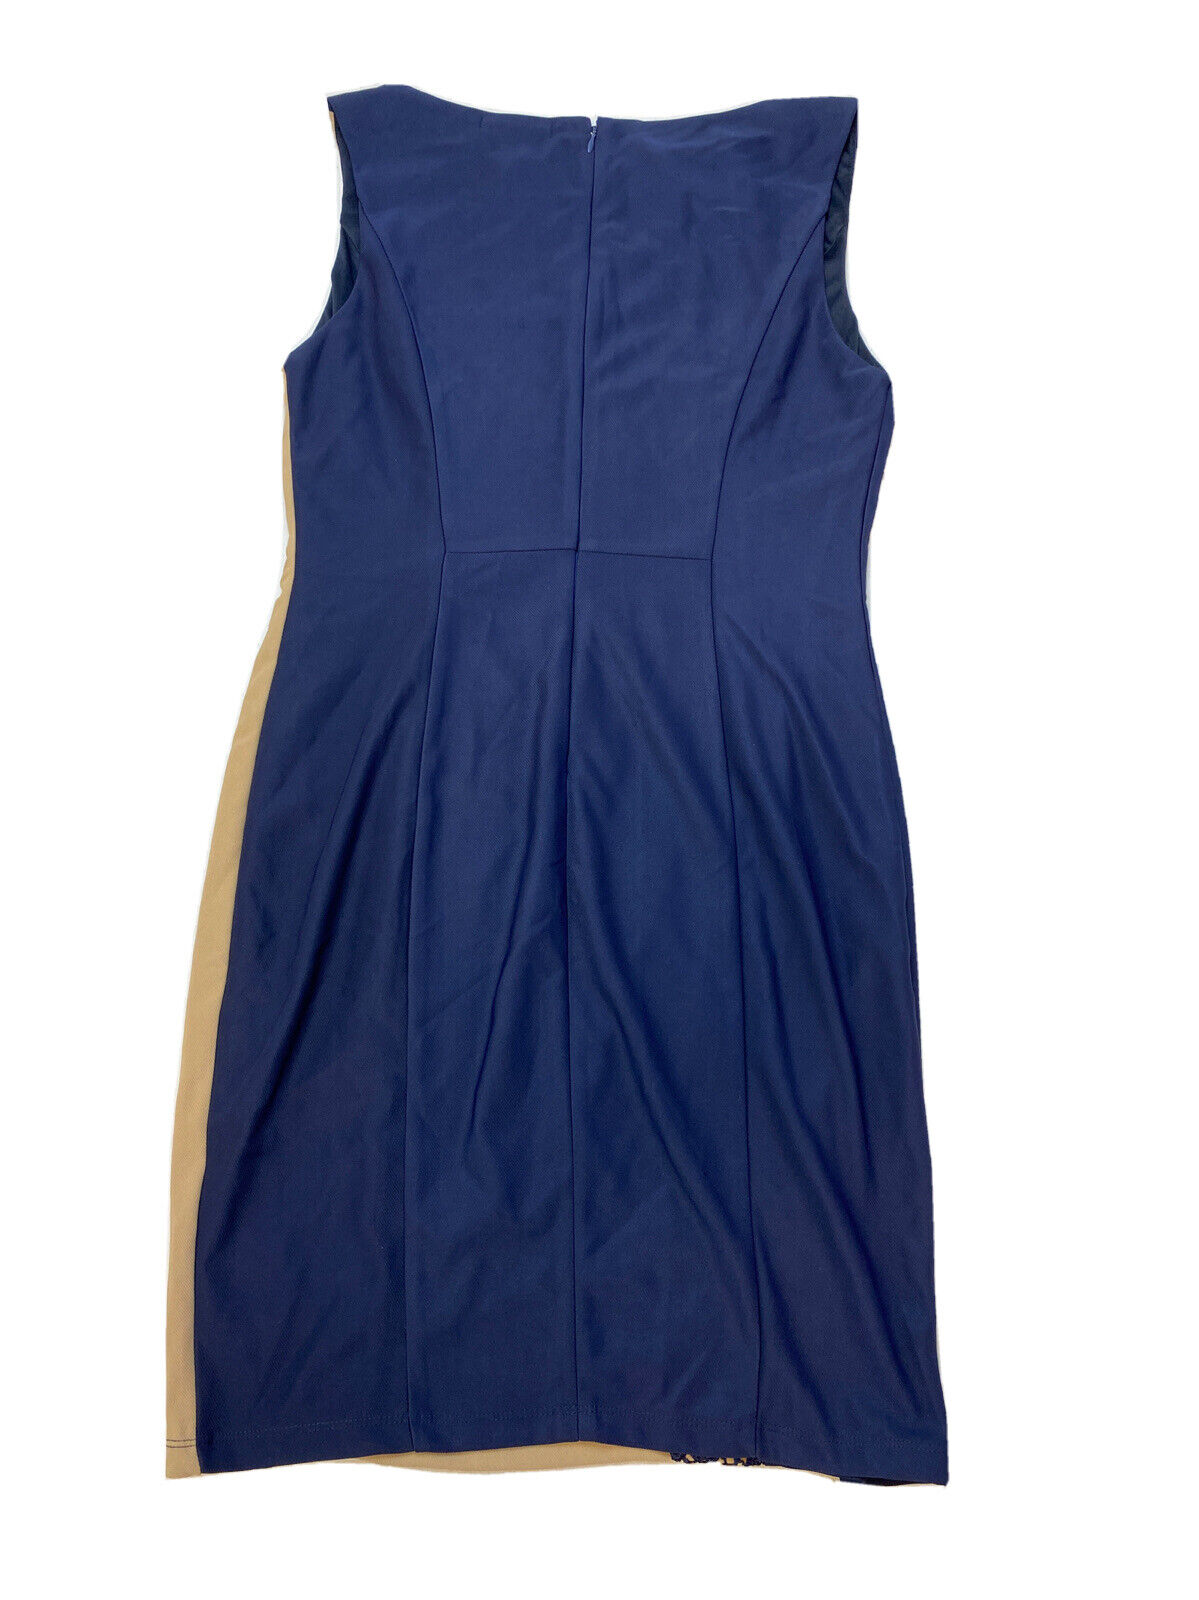 NEW Lexi Drew Women's Beige/Navy Lace Accent Shift Dress Sz L